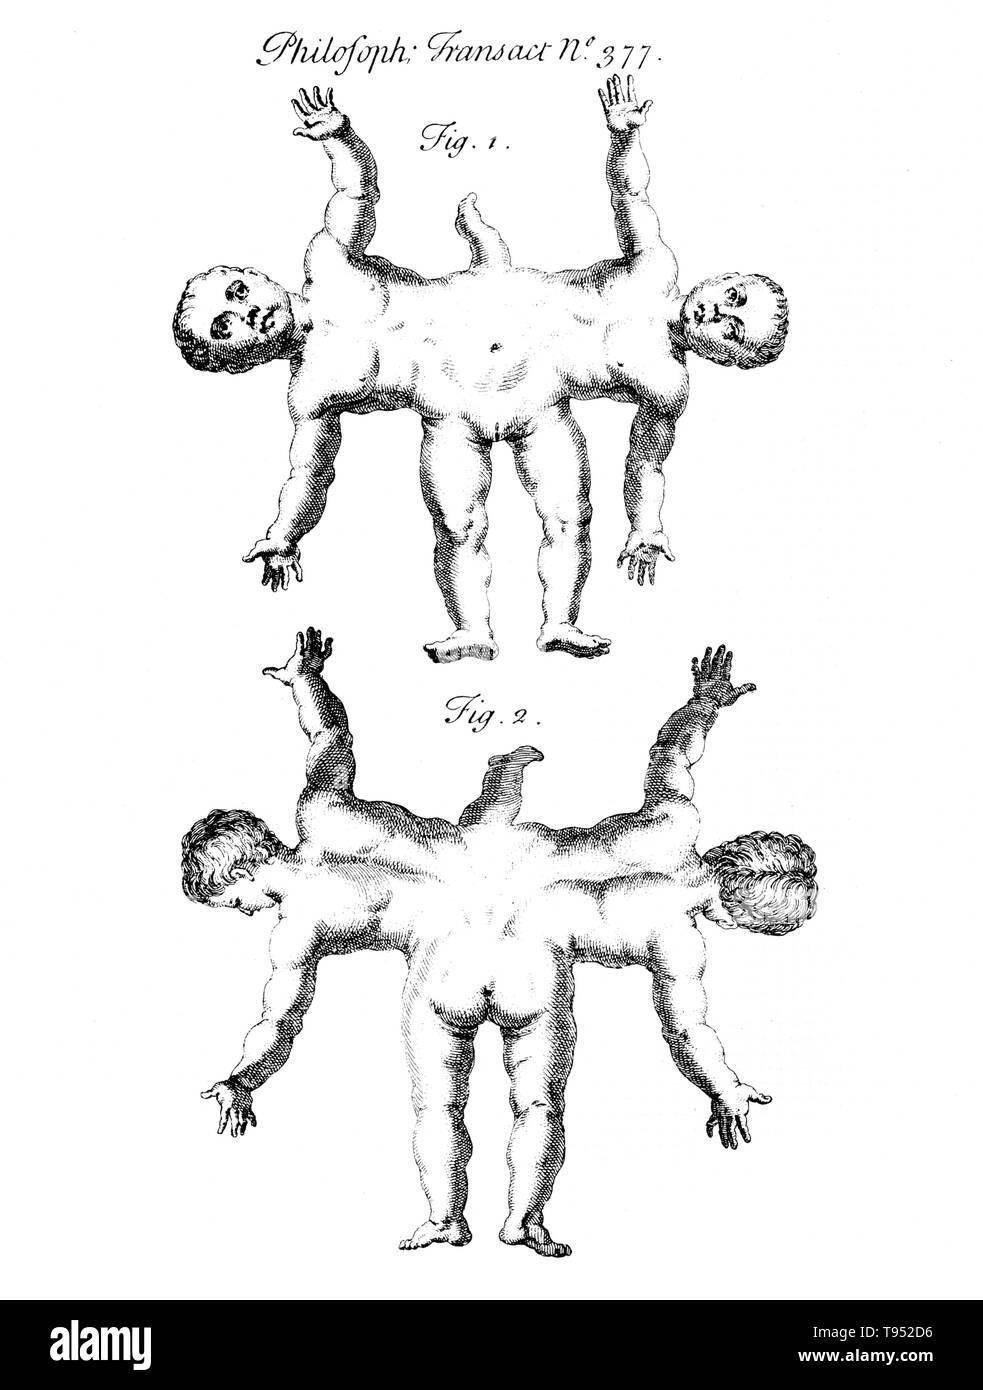 Siamesische Zwillinge sind eineiige Zwillinge mit ihren Körpern Irgendwann trat geboren und in unterschiedlichem Grad der verbleibenden Vervielfältigung, durch die unvollständige Teilung der Eizelle, aus der die Zwillinge entwickelt. Ischiopagus Zwillinge haben die untere Hälfte der beiden Körper verschmolzen, mit Stacheln Ende-zu-Ende im 180 Grad Winkel verbunden. Die Zwillinge haben vier Arme, zwei, drei oder vier Beine; und in der Regel eine externe Gruppe von Genitalien und Anus. Bild erschien in "Philosophical Transactions", Band 31-32 Nr. 377, Firgure 1&2, veröffentlicht 1720-23. Stockfoto